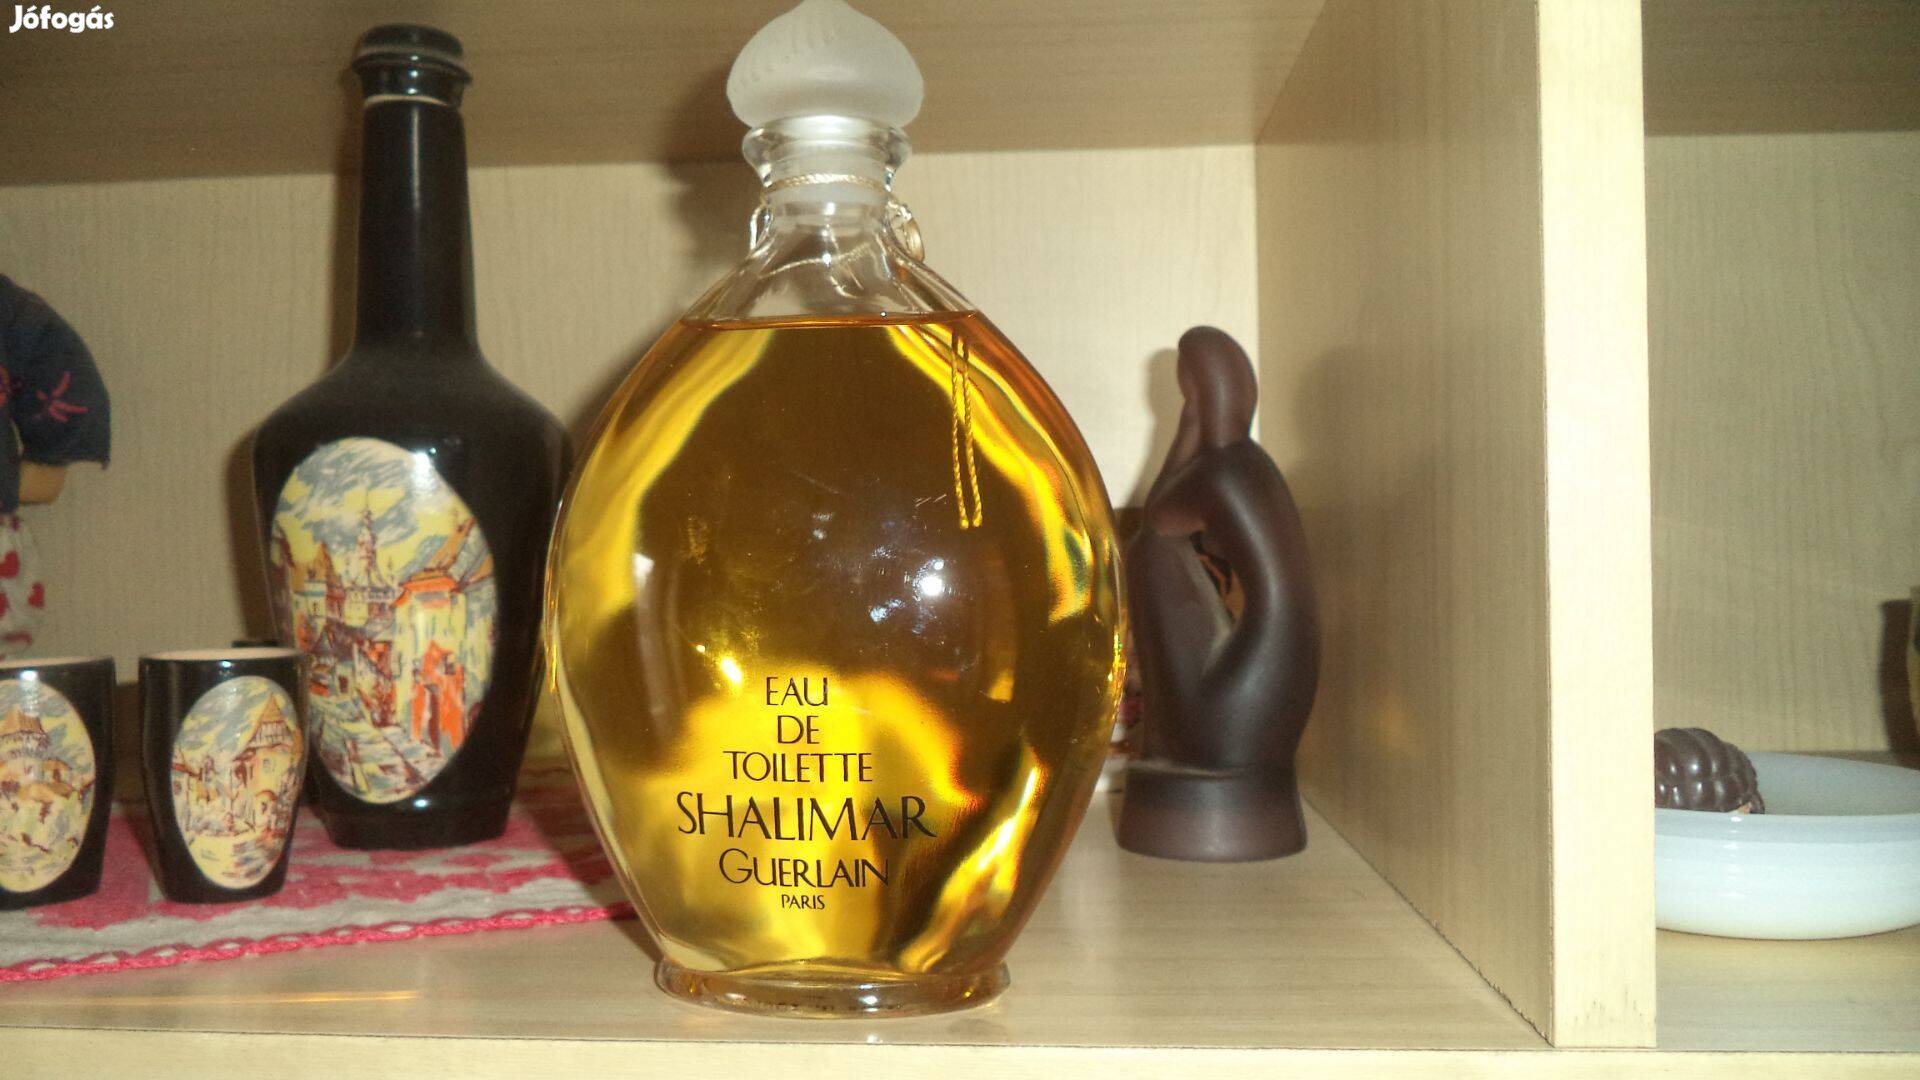 Guerlain shalimár eau parfüm 500ml